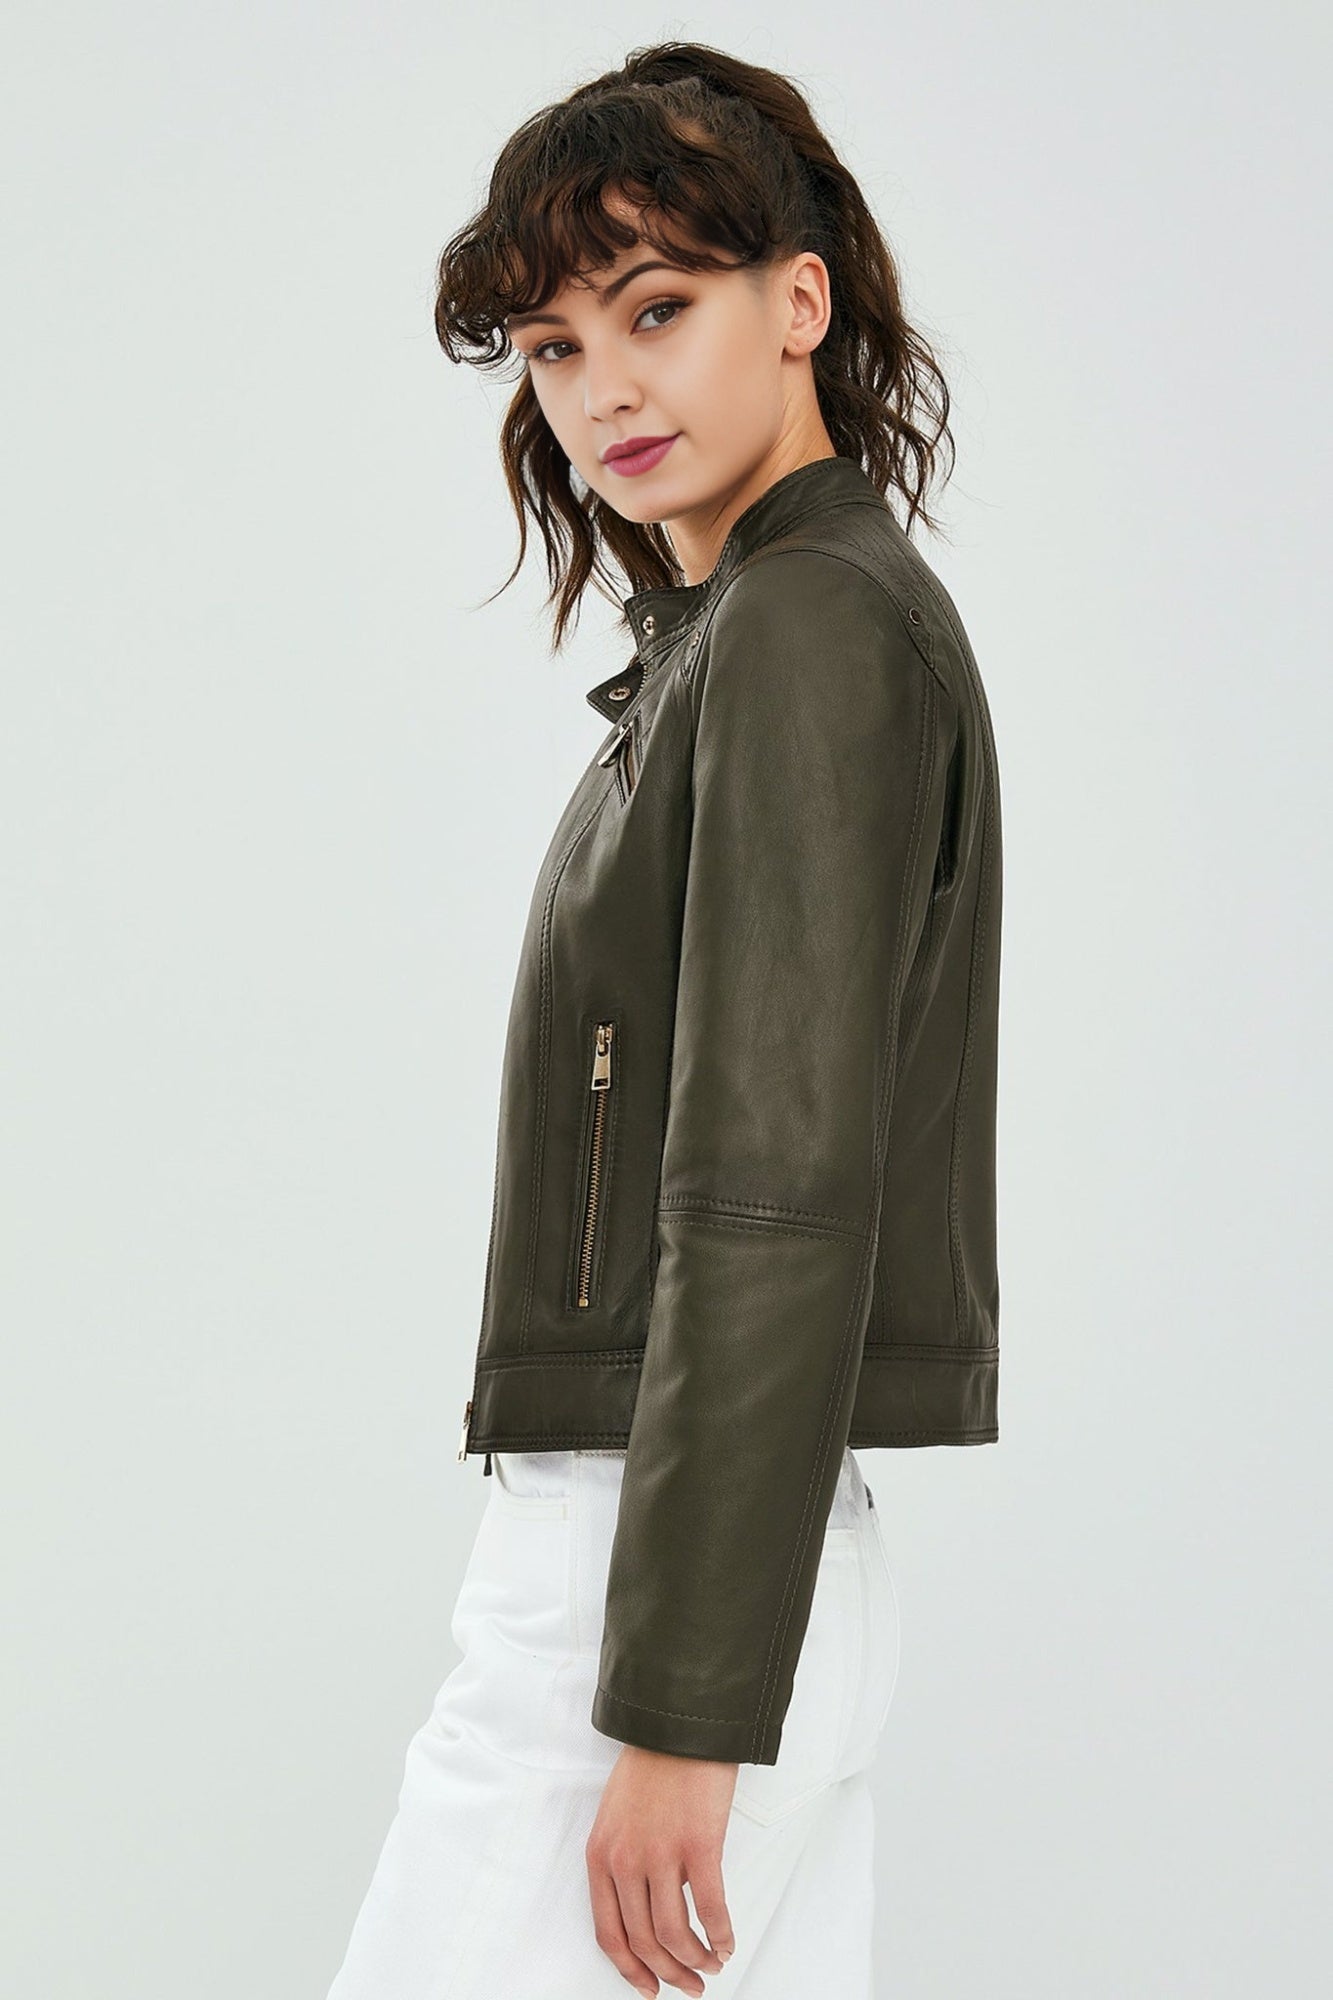 Sonia Women's Khaki Leather Jacket